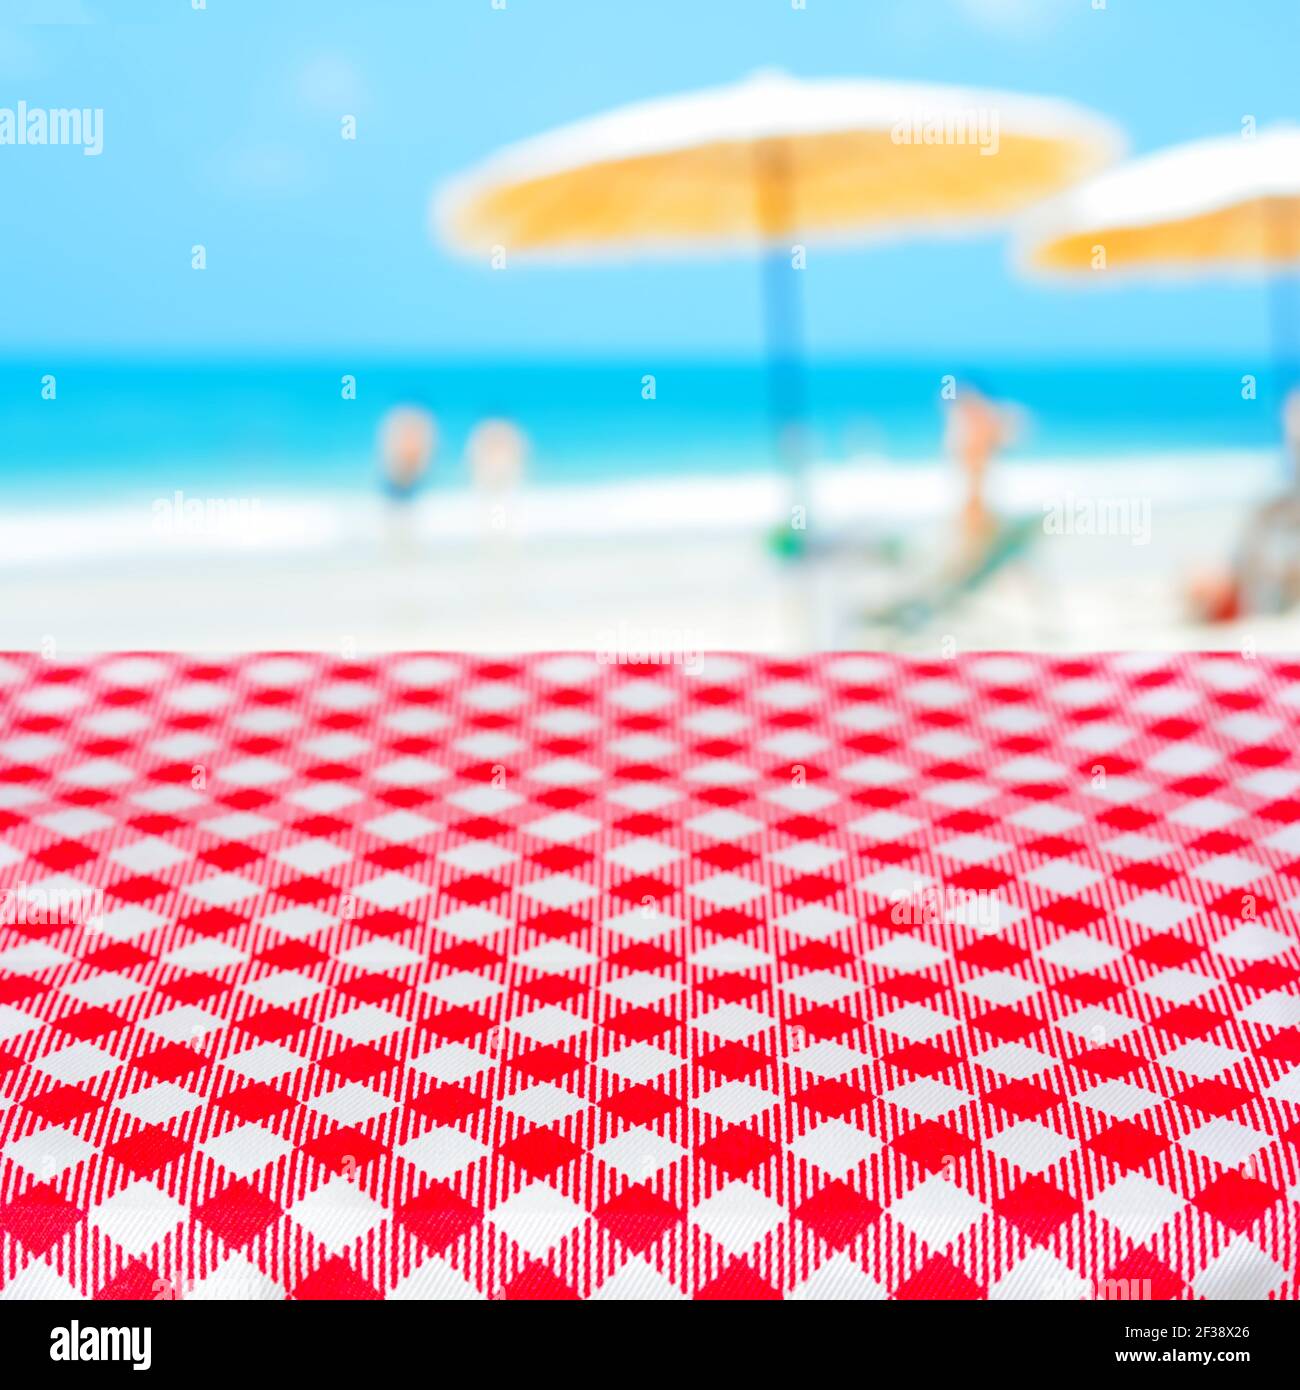 Rote karierte Tischdecke auf verschwommenem Strand Hintergrund, Sommerurlaub Strand Picknick-Konzept - kann für die Anzeige oder Montage Ihrer Produkte verwendet werden Stockfoto